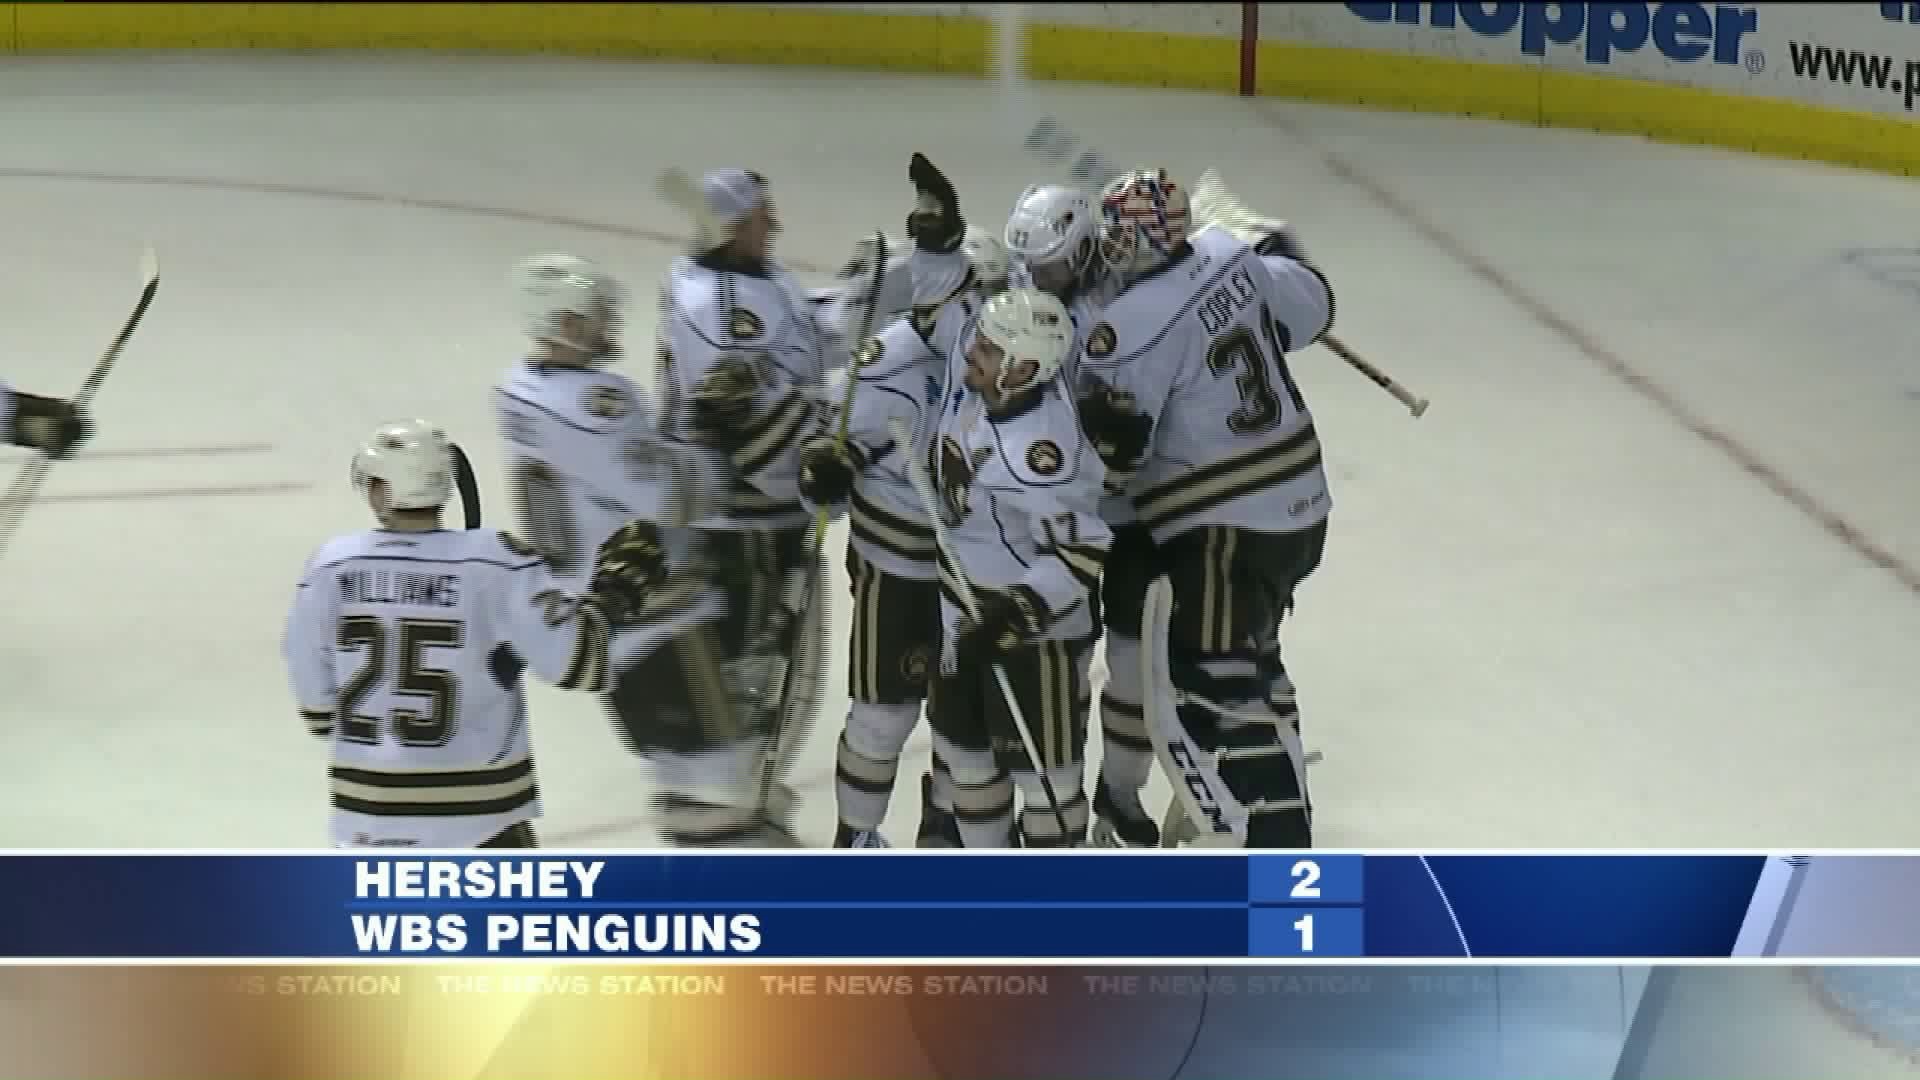 Hershey Bears vs Wilkes-Barre Scranton Penguins hockey